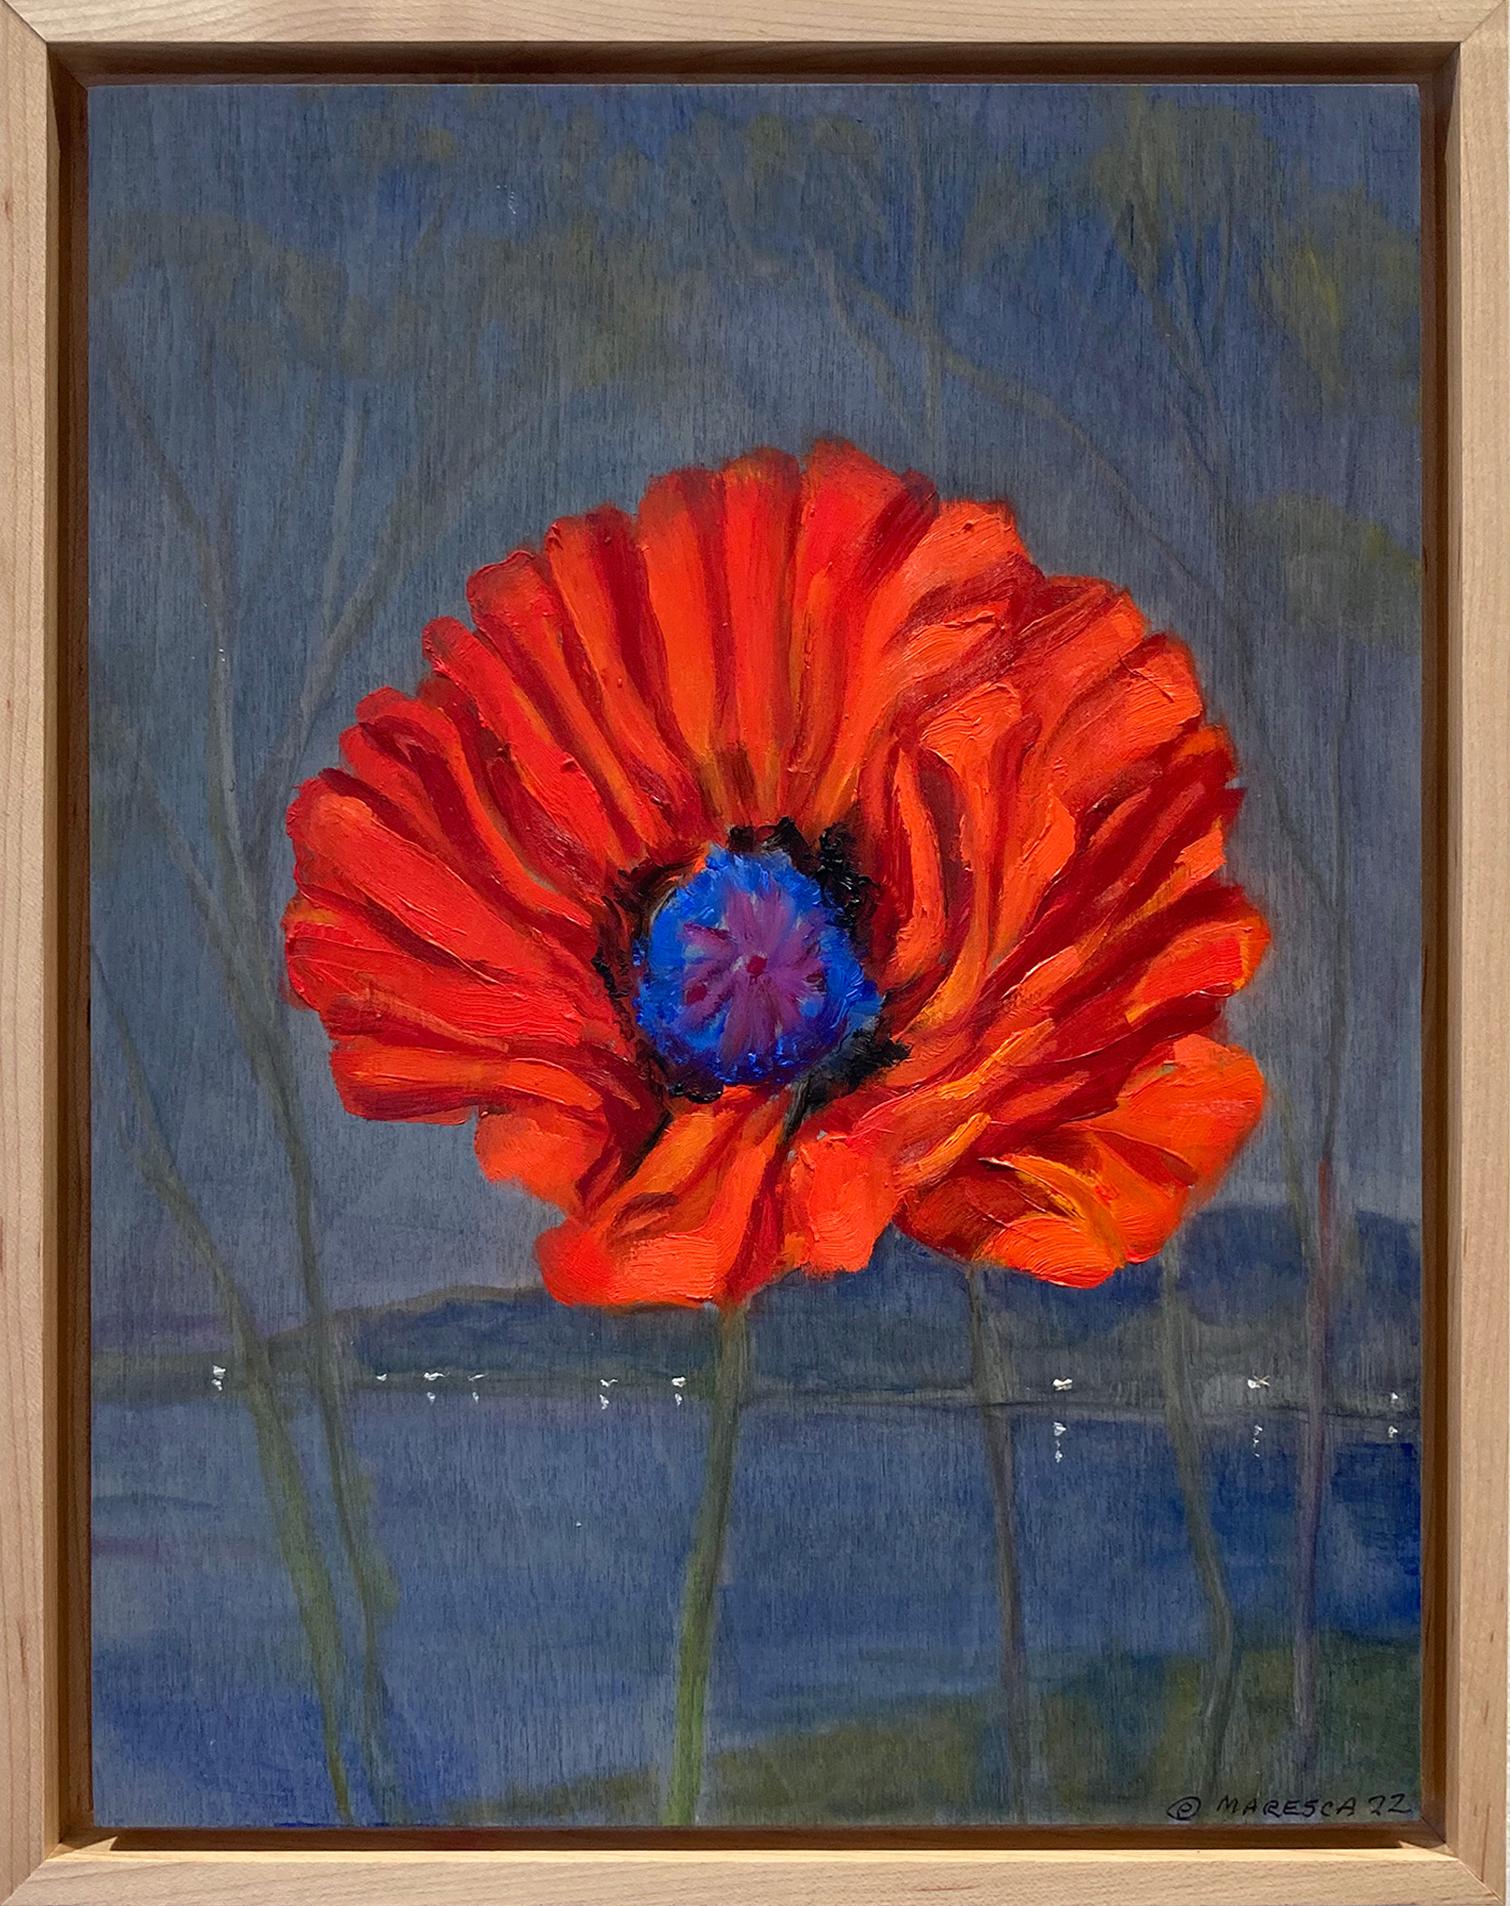 A Winter Poppy (Nature morte d'un coquelicot rouge et paysage bleu) 